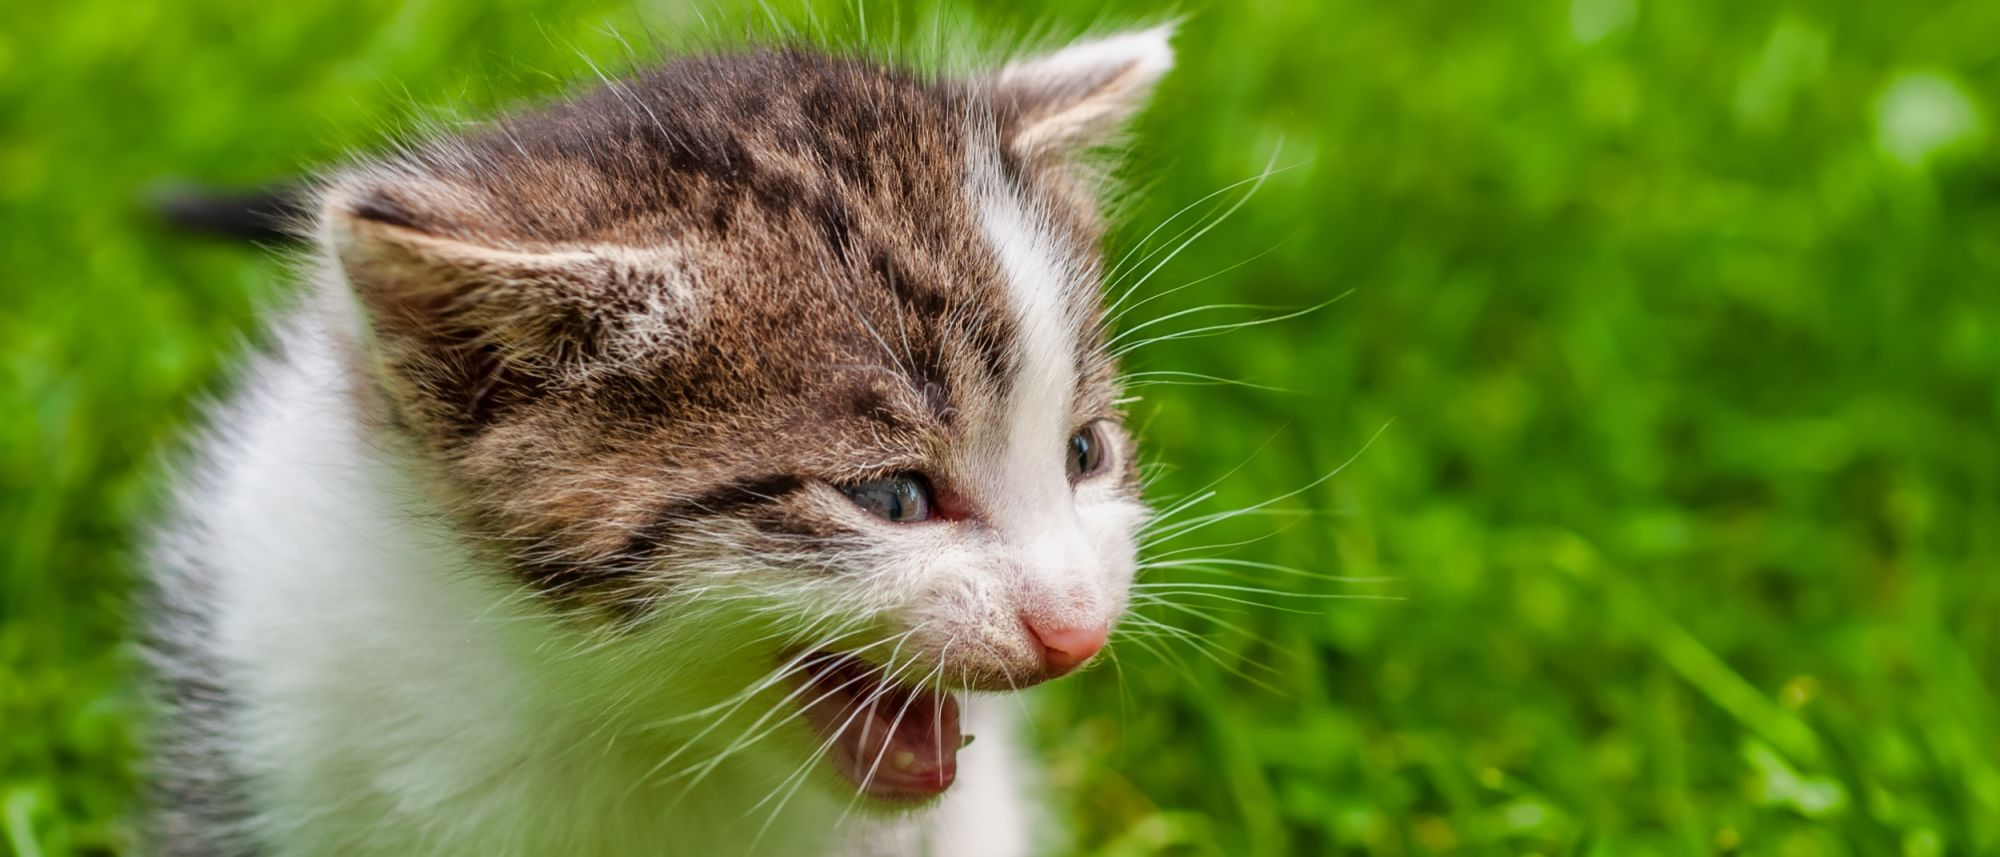 Мяуканье кота: почему кошки мяукают и как успокоить | Royal Canin UA